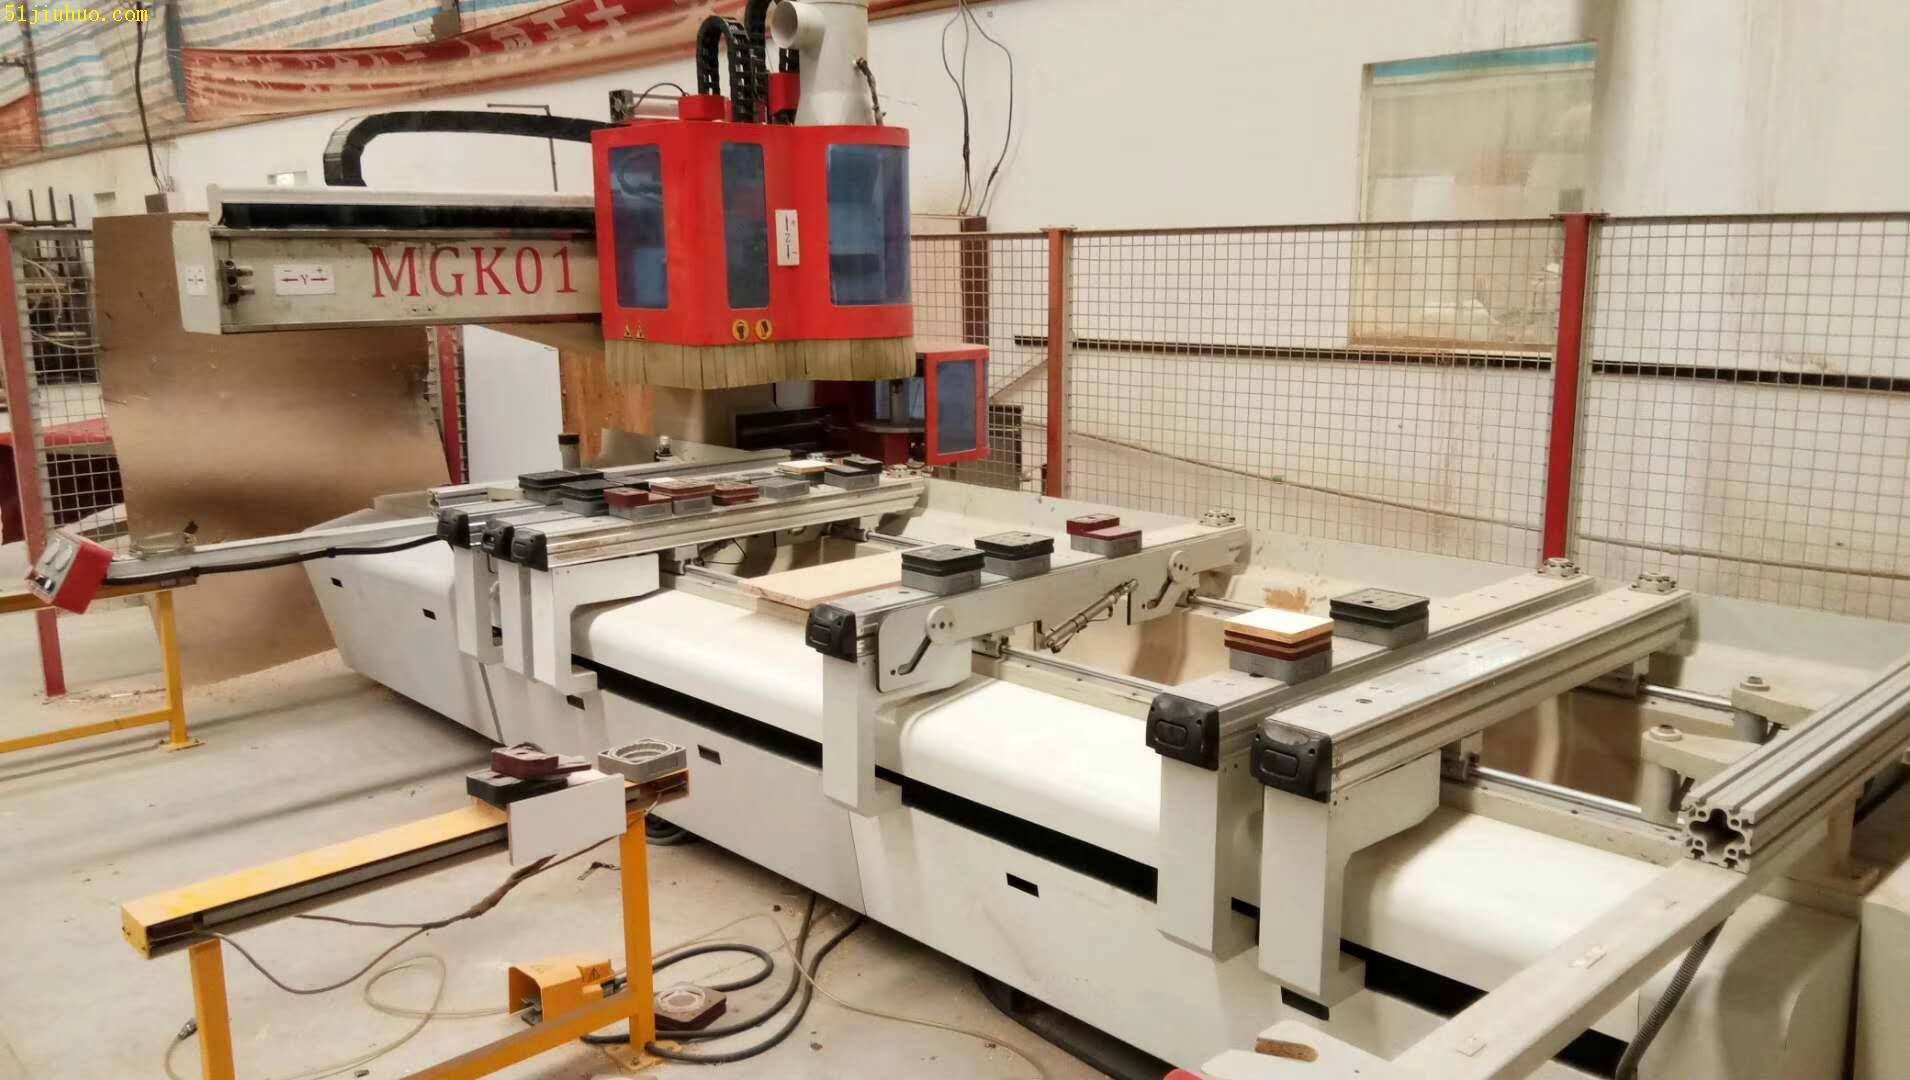 出售二手木工机械南兴mgk01高速木材复合加工中心